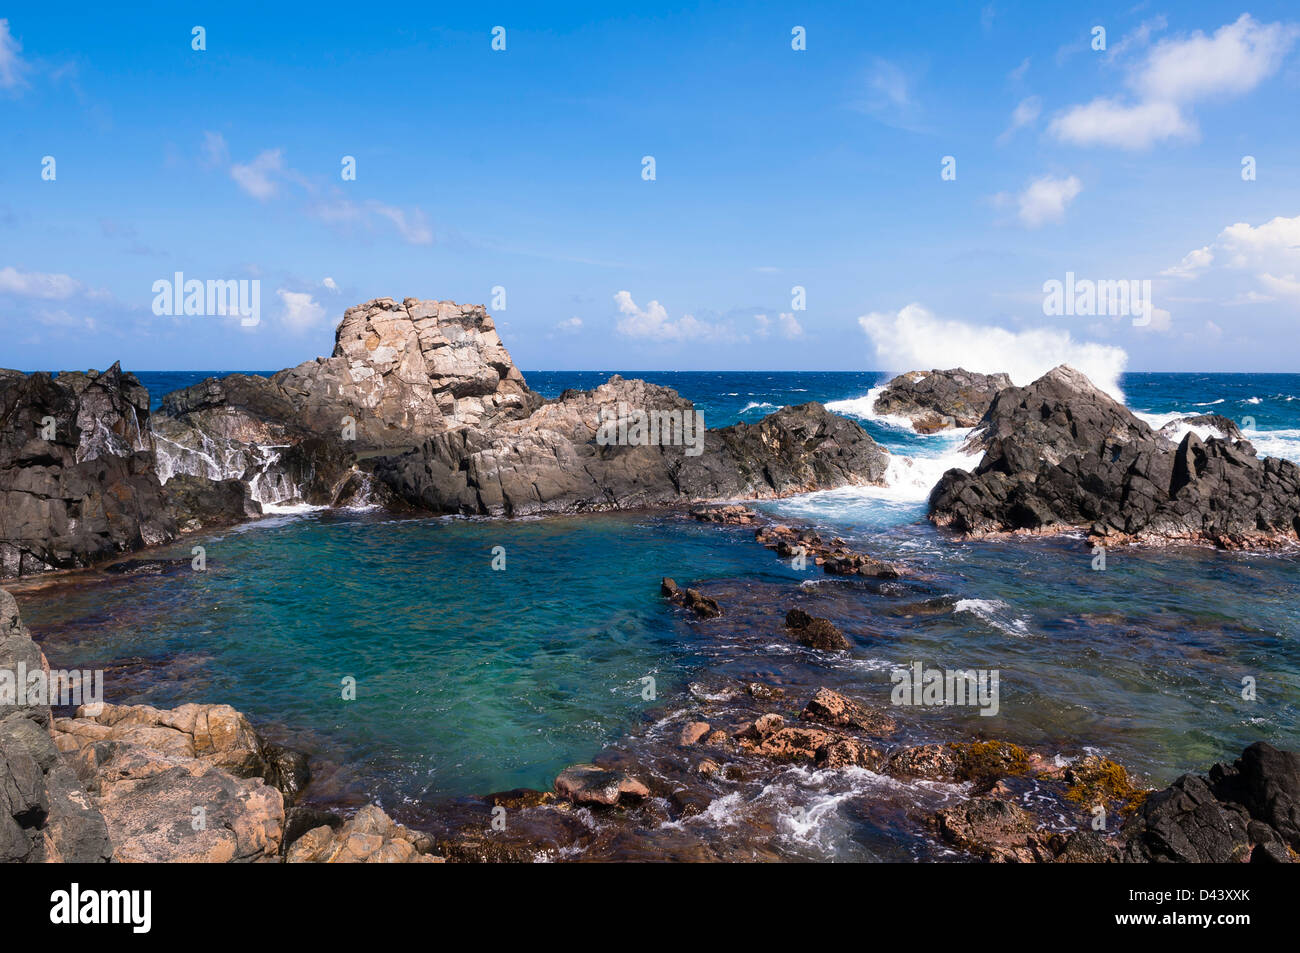 Natural Pool and Rocks, Arikok National Park, Aruba, Lesser Antilles, Caribbean Stock Photo